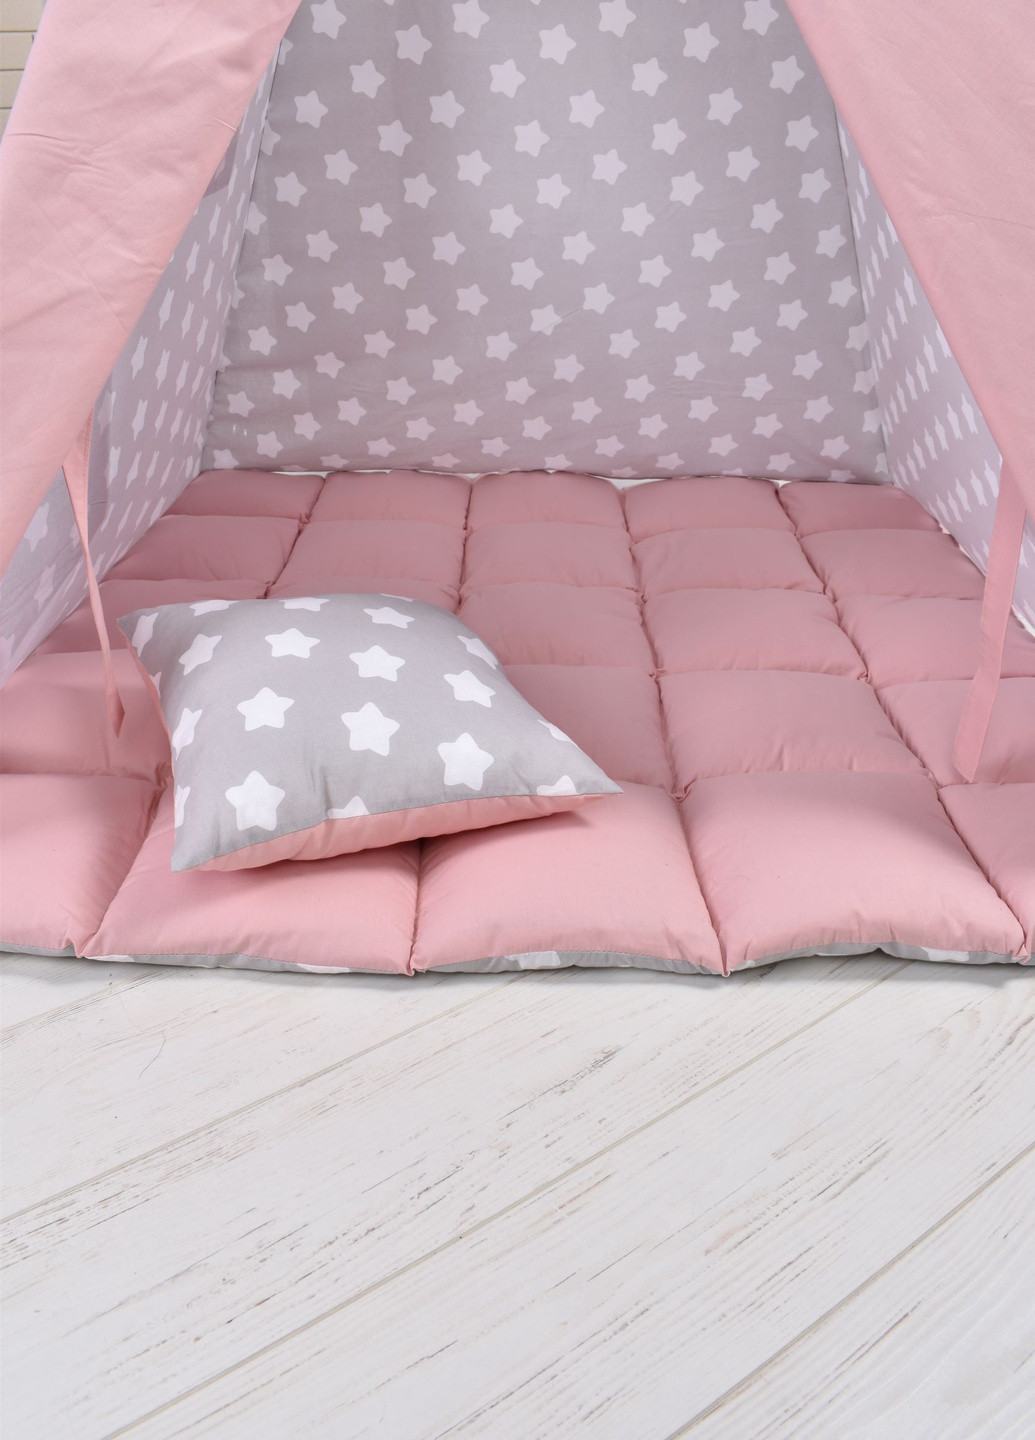 Вигвам Для Девочки пудровый звёздочки детская палатка с мягким ковриком и подушкой, подвеска сердечко в подарок Украина (256947360)